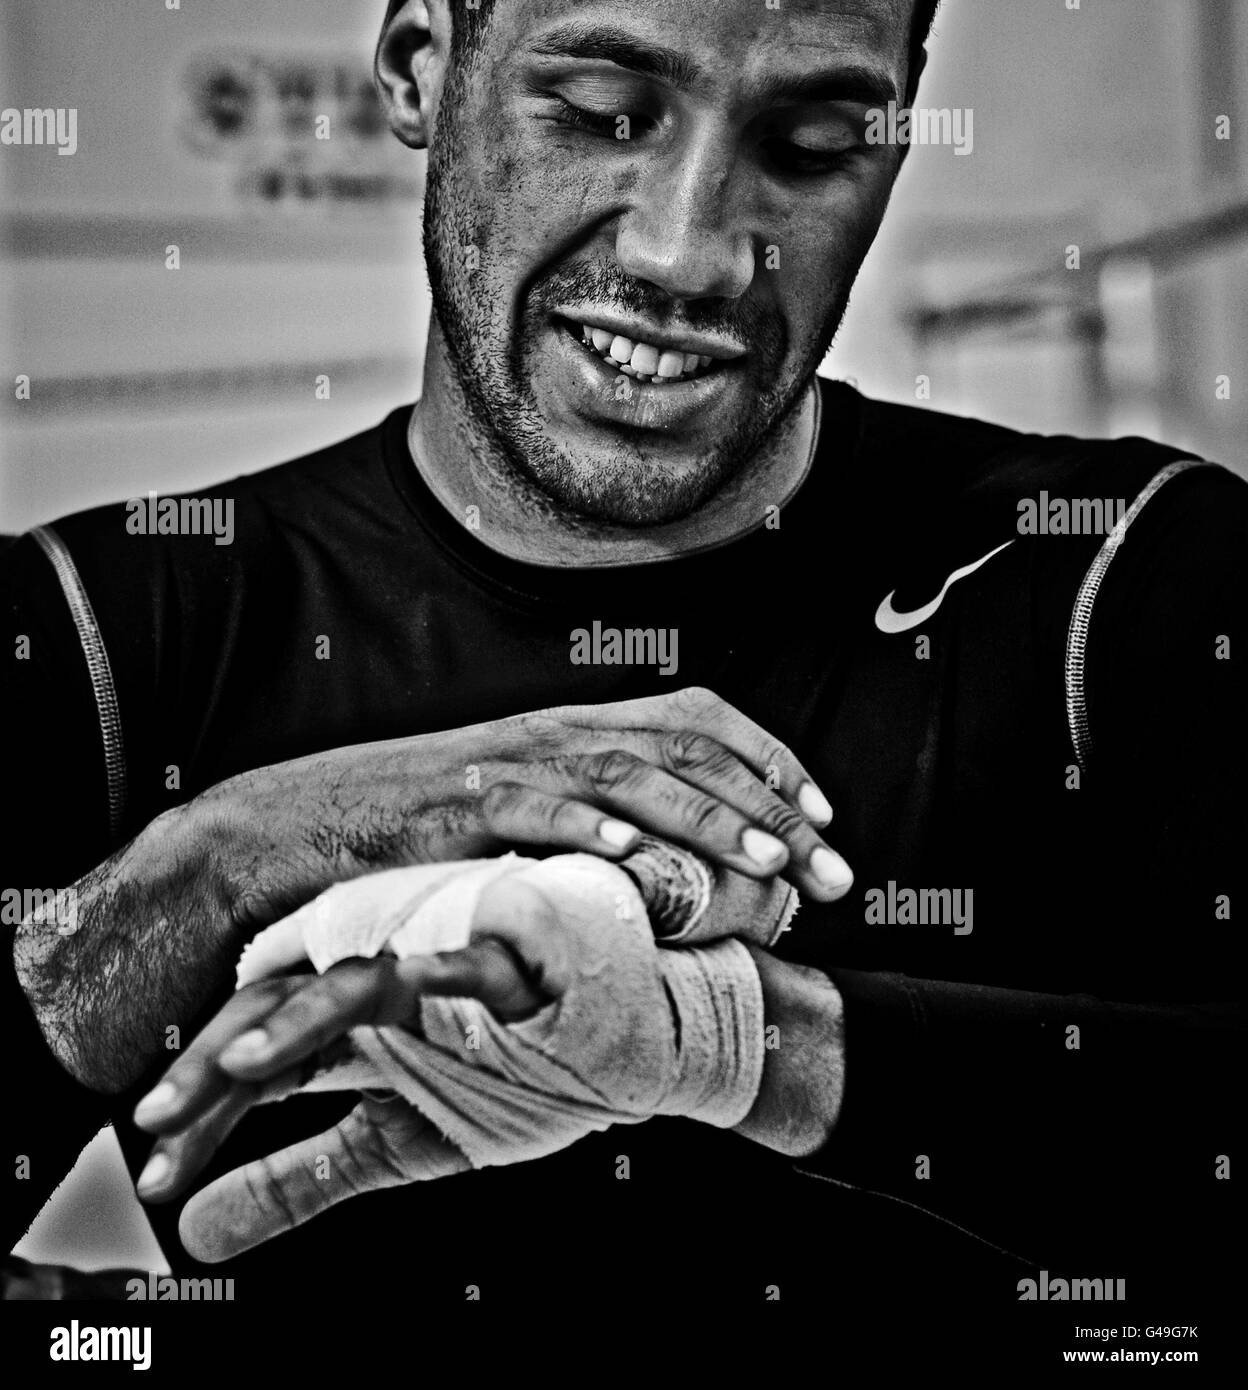 Boxen - James DeGale Trainingseinheit - Akademie Stockfoto